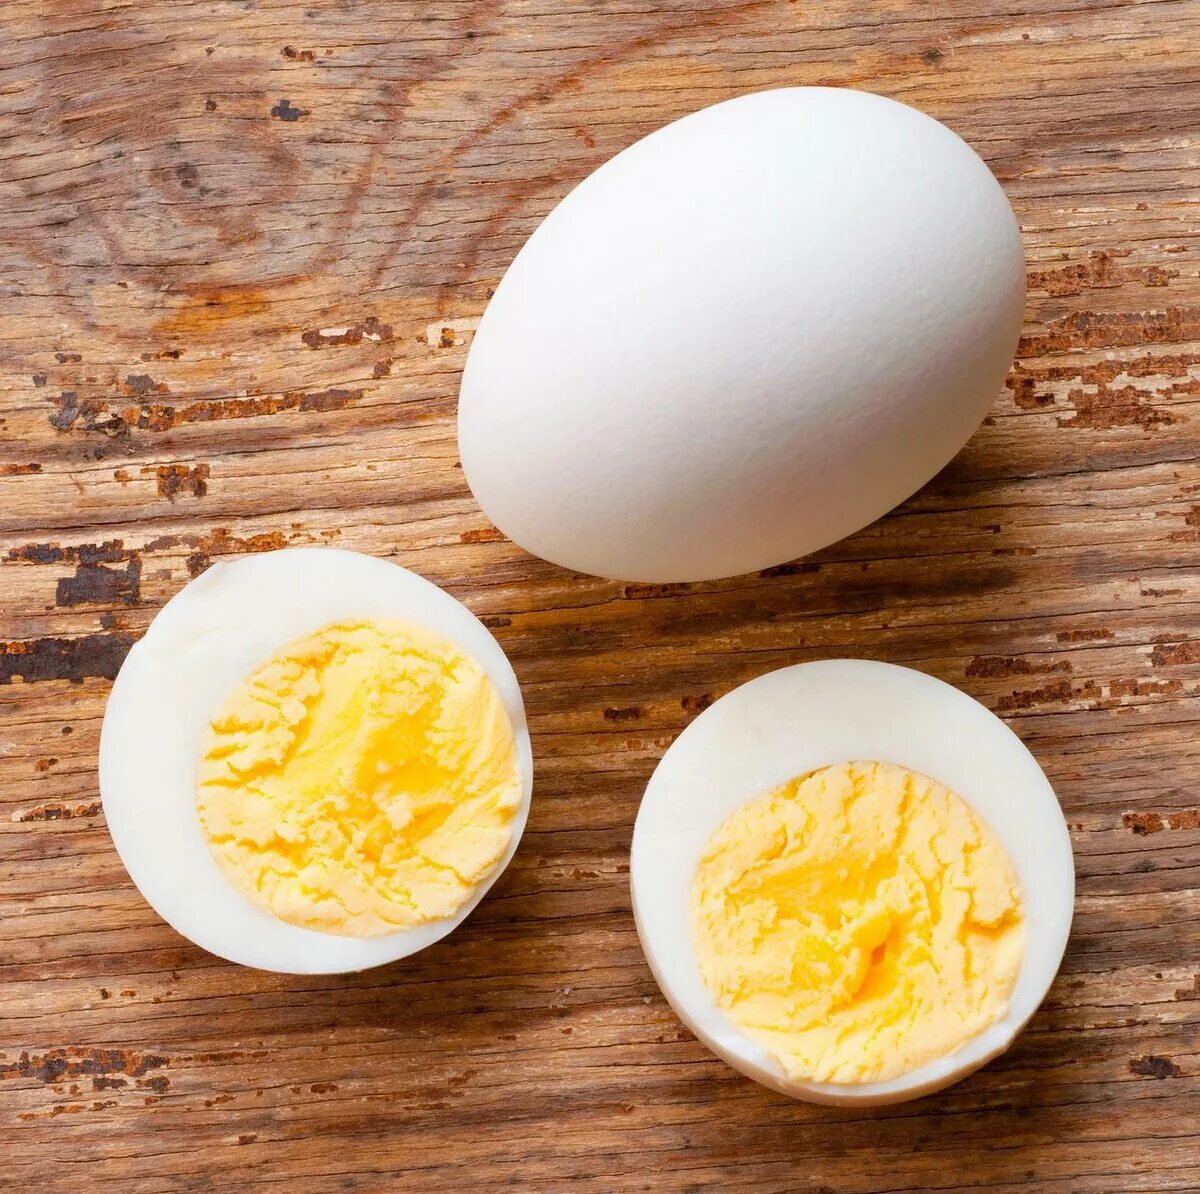 Яйцо вареное вкрутую. Яйца сваренные вкрутую. Яйцо в крутую. Вареные яички.